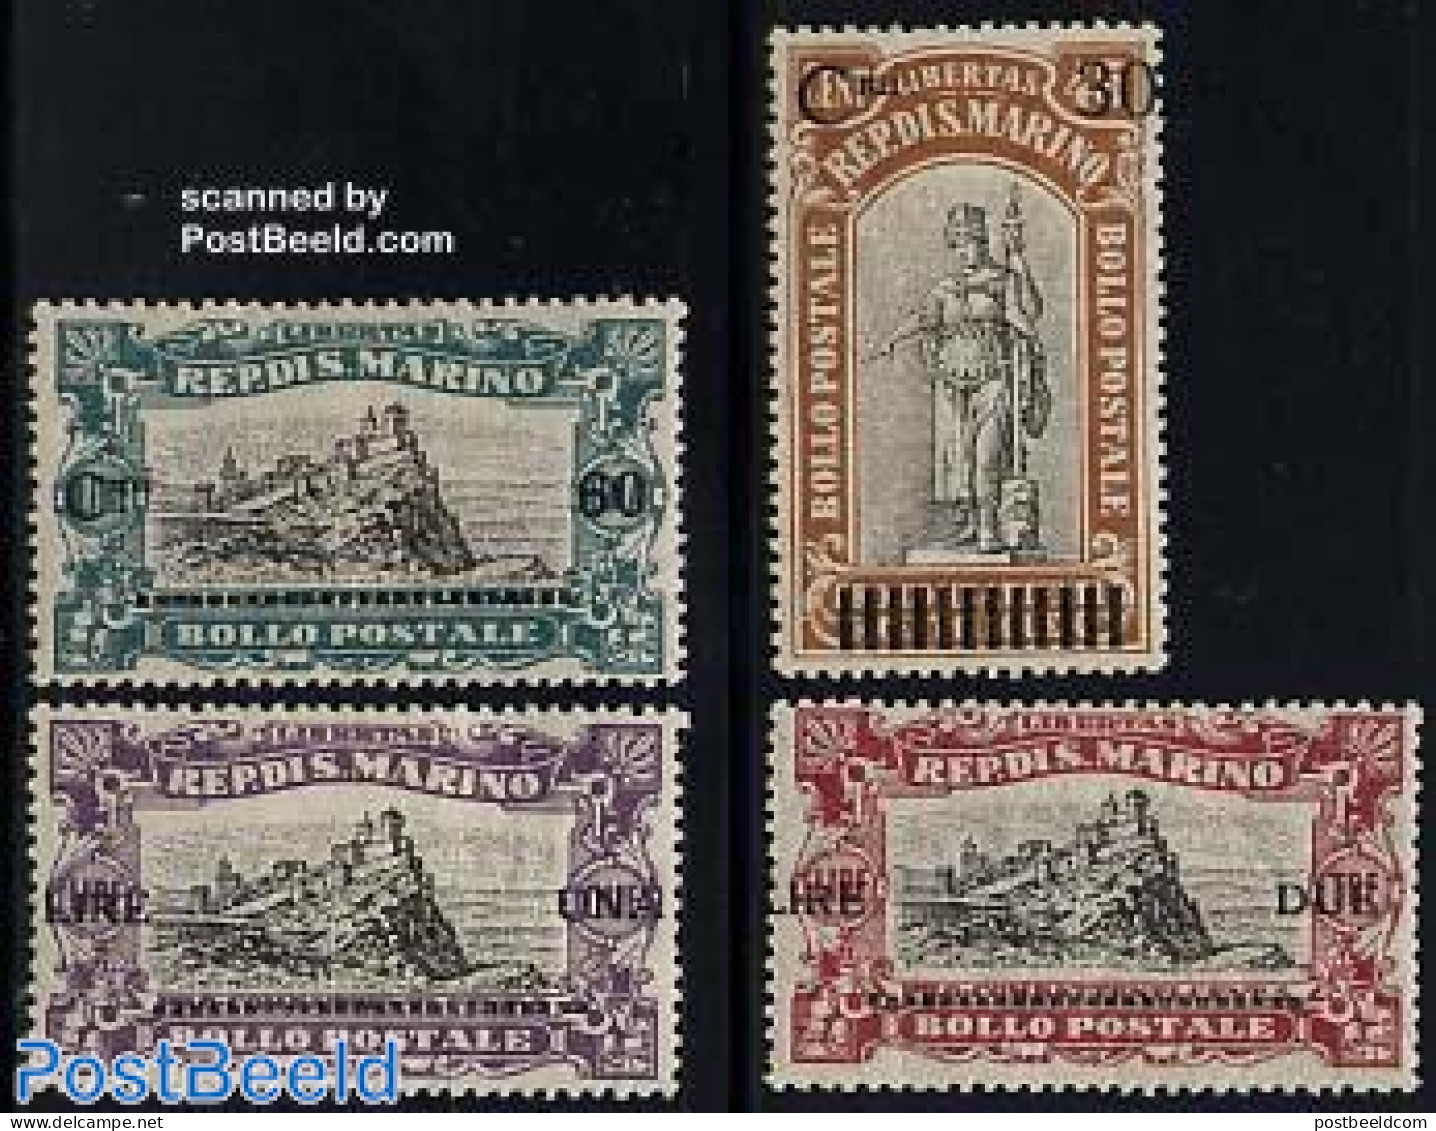 San Marino 1924 War Victims Hospital 4v, Unused (hinged) - Unused Stamps